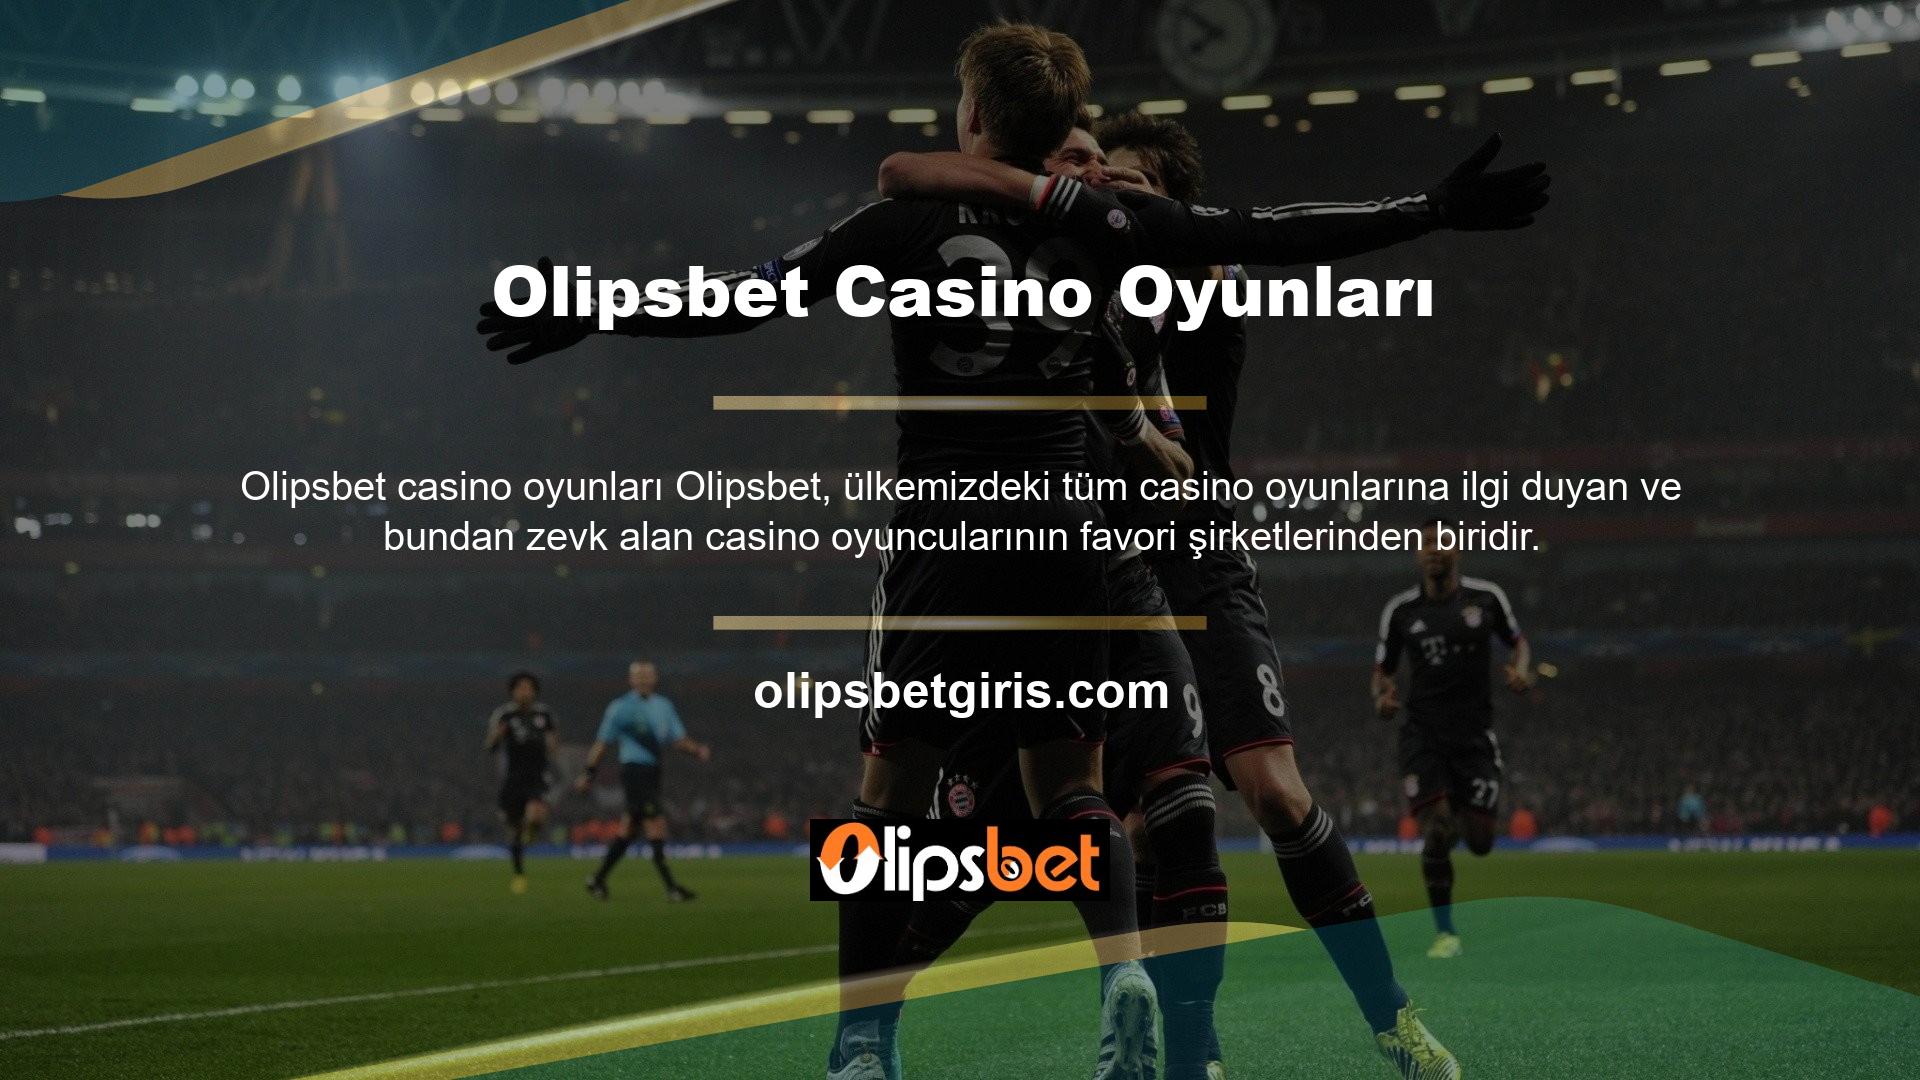 Olipsbet casino oyunları